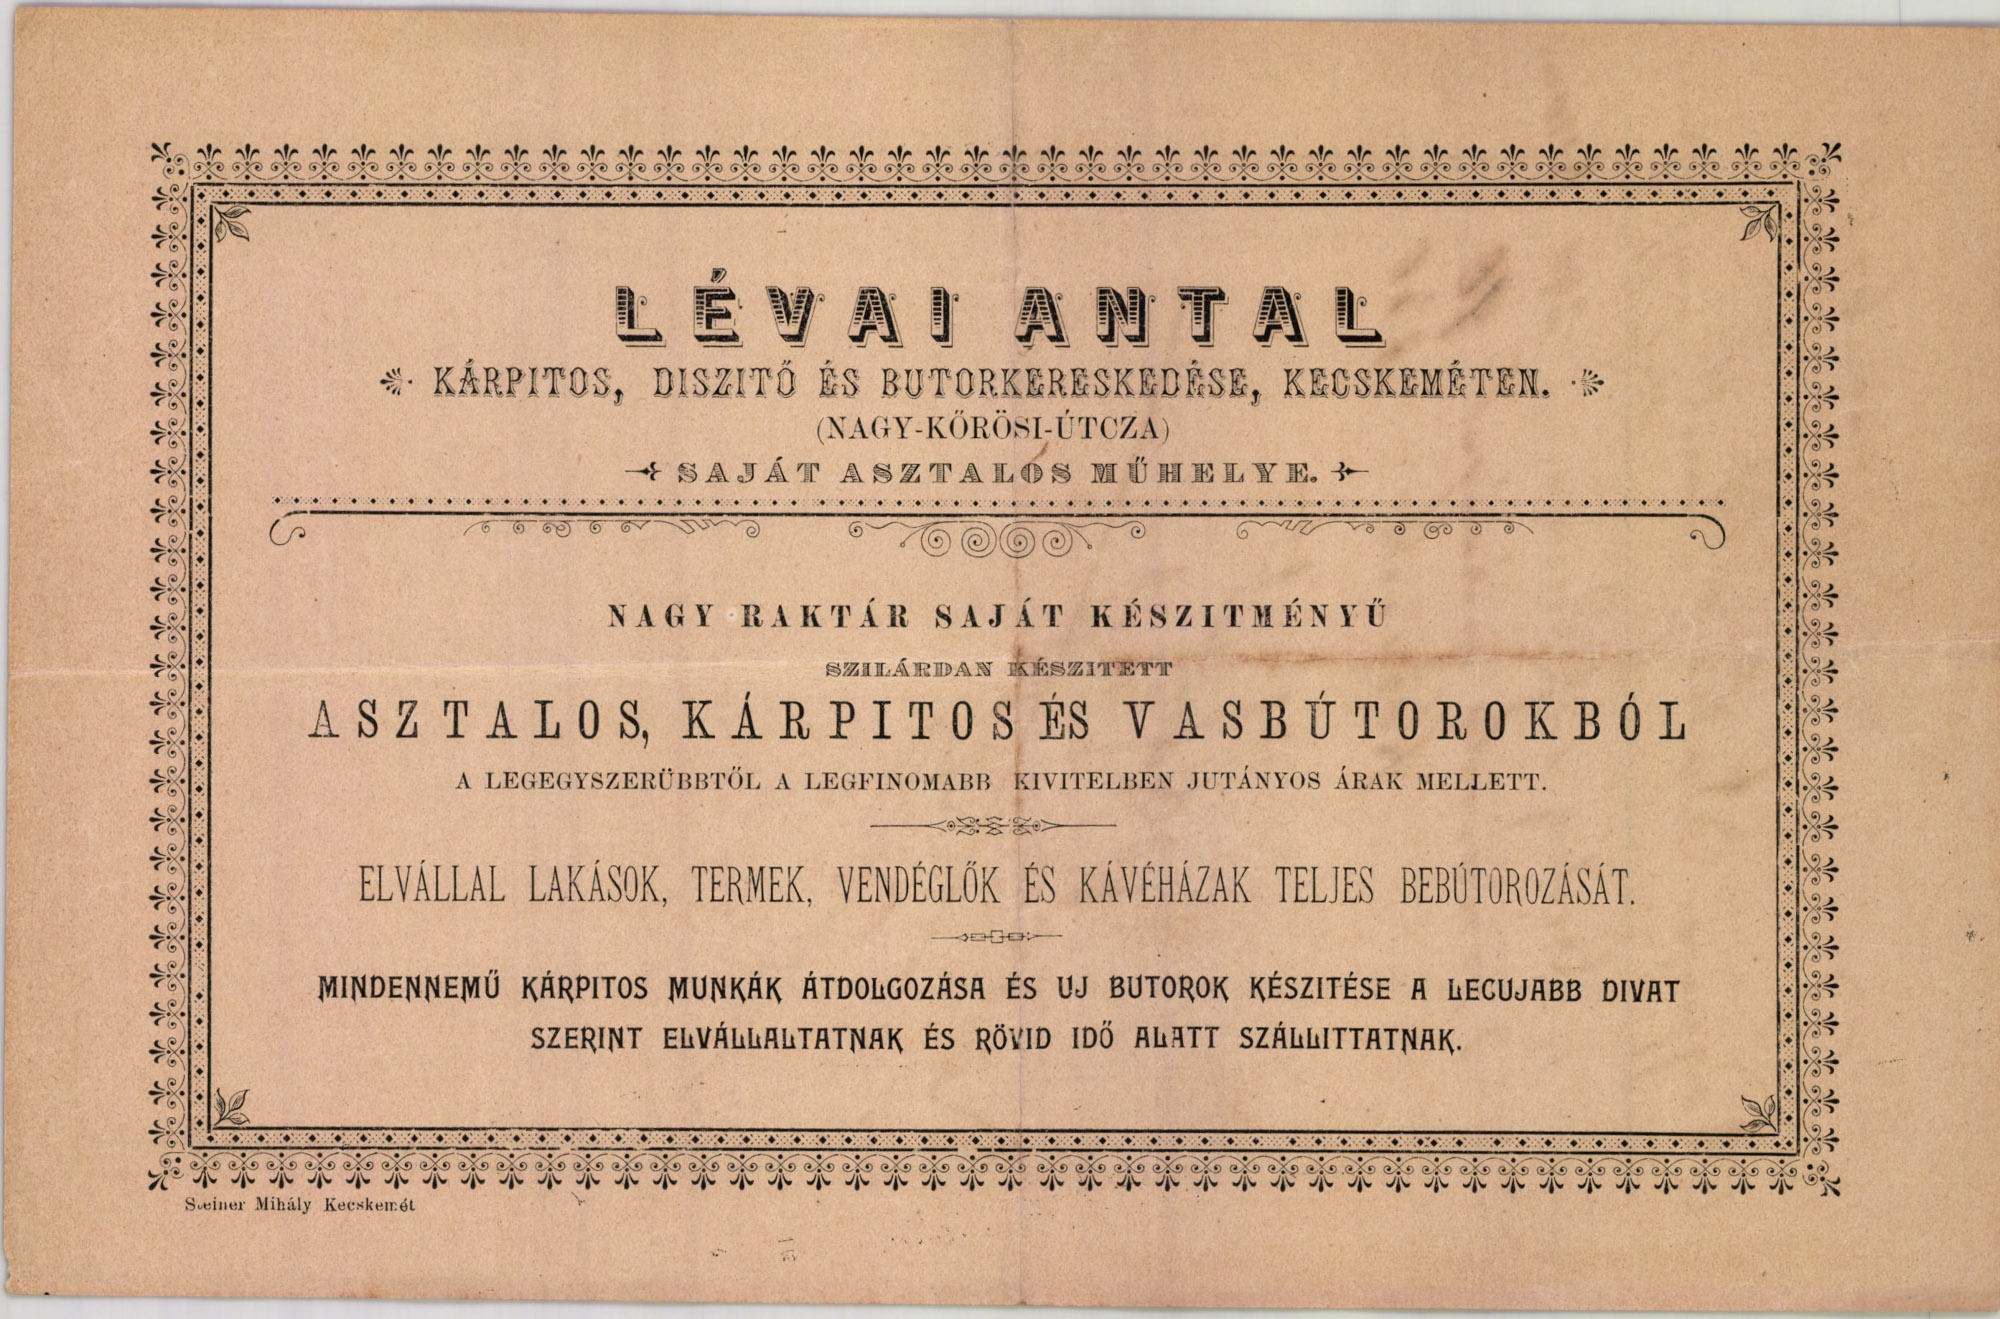 Lévai Antal kárpitos, díszítő és bútorkereskedése (Magyar Kereskedelmi és Vendéglátóipari Múzeum CC BY-NC-SA)